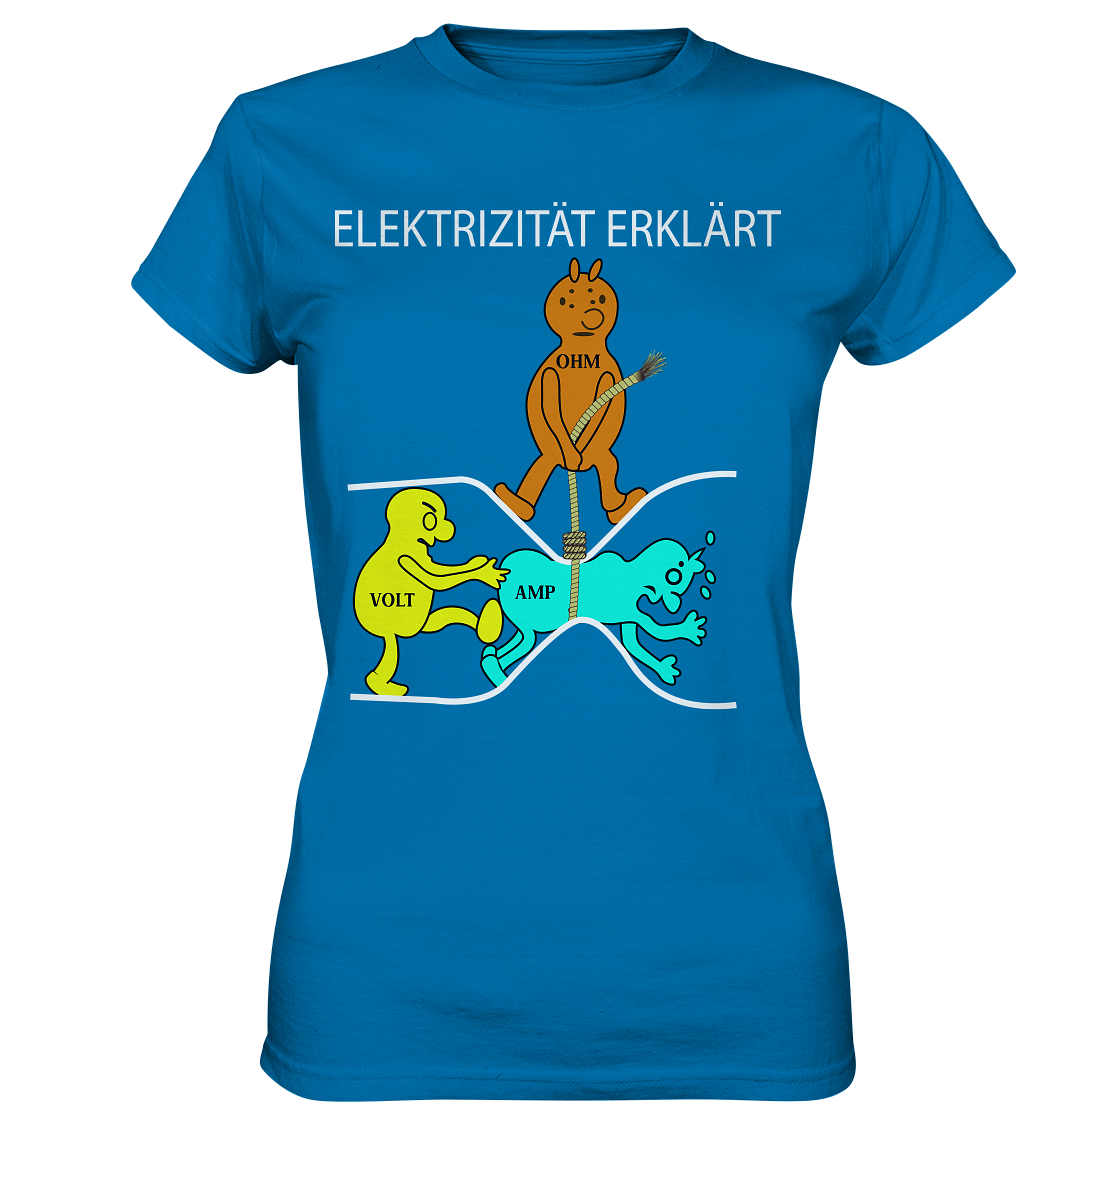 Elektrizität erklärt - Ladies Premium Shirt